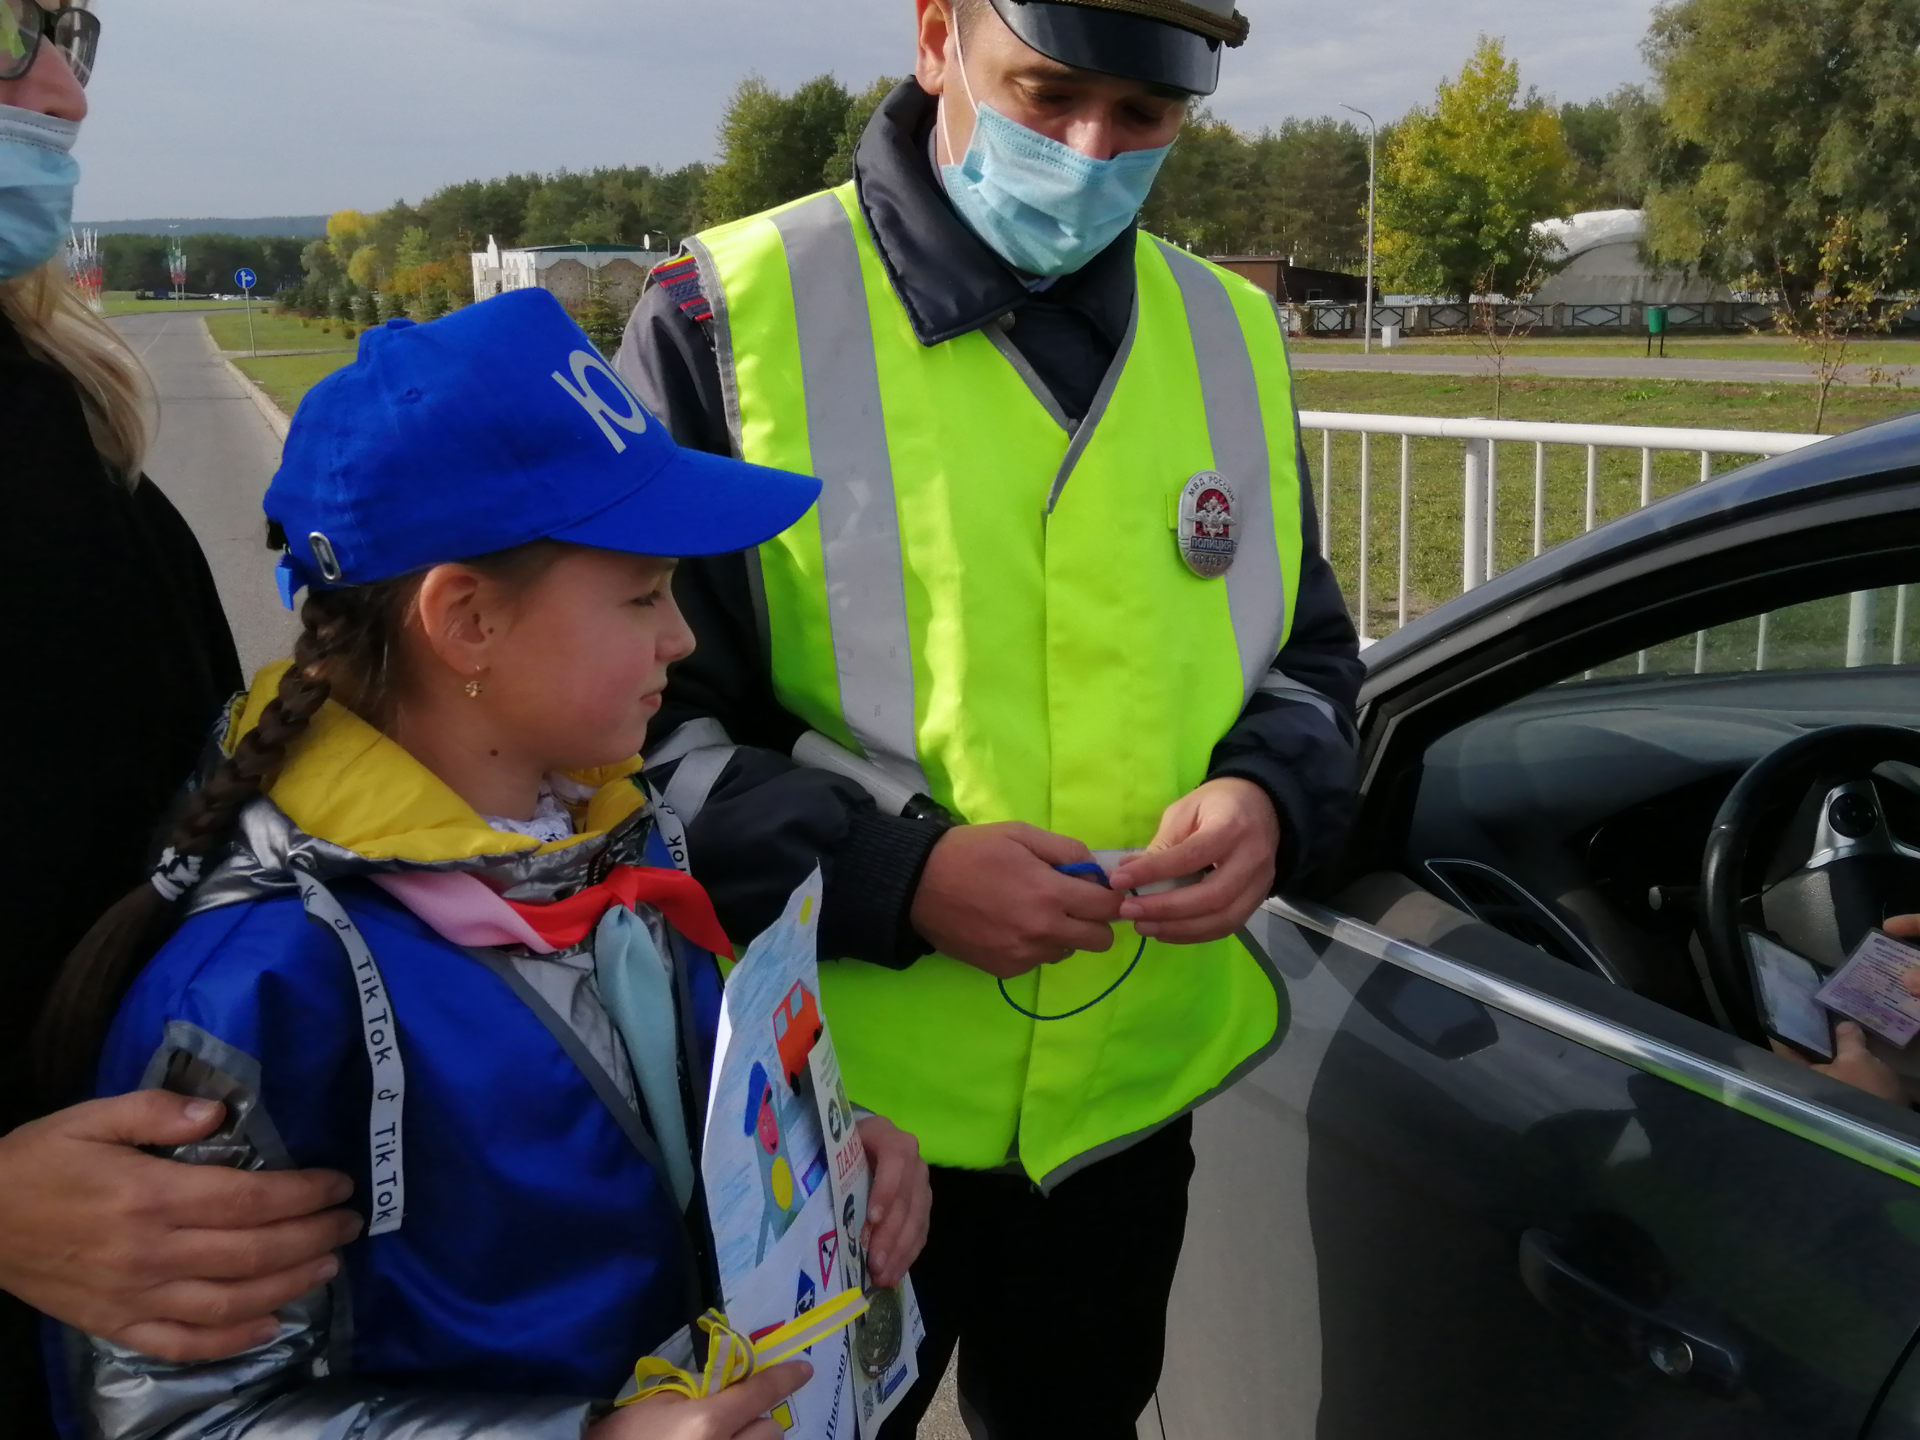 Юные татарстанцы приняли участие в акции «Письмо водителю»